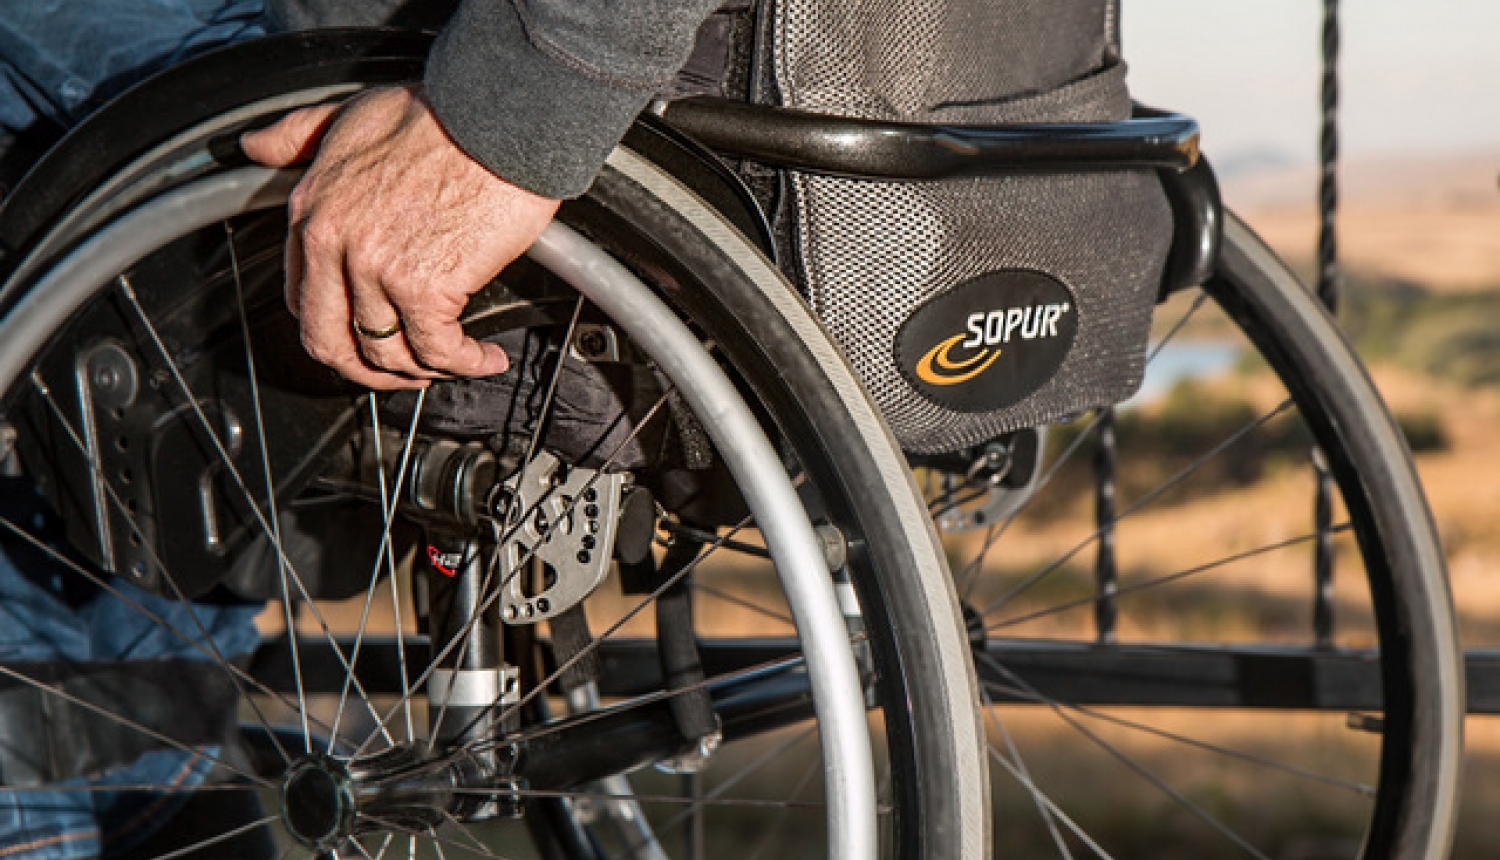 Iedzīvotājiem ar invaliditāti jādod iespēja būt līdzvērtīgiem sabiedrības locekļiem